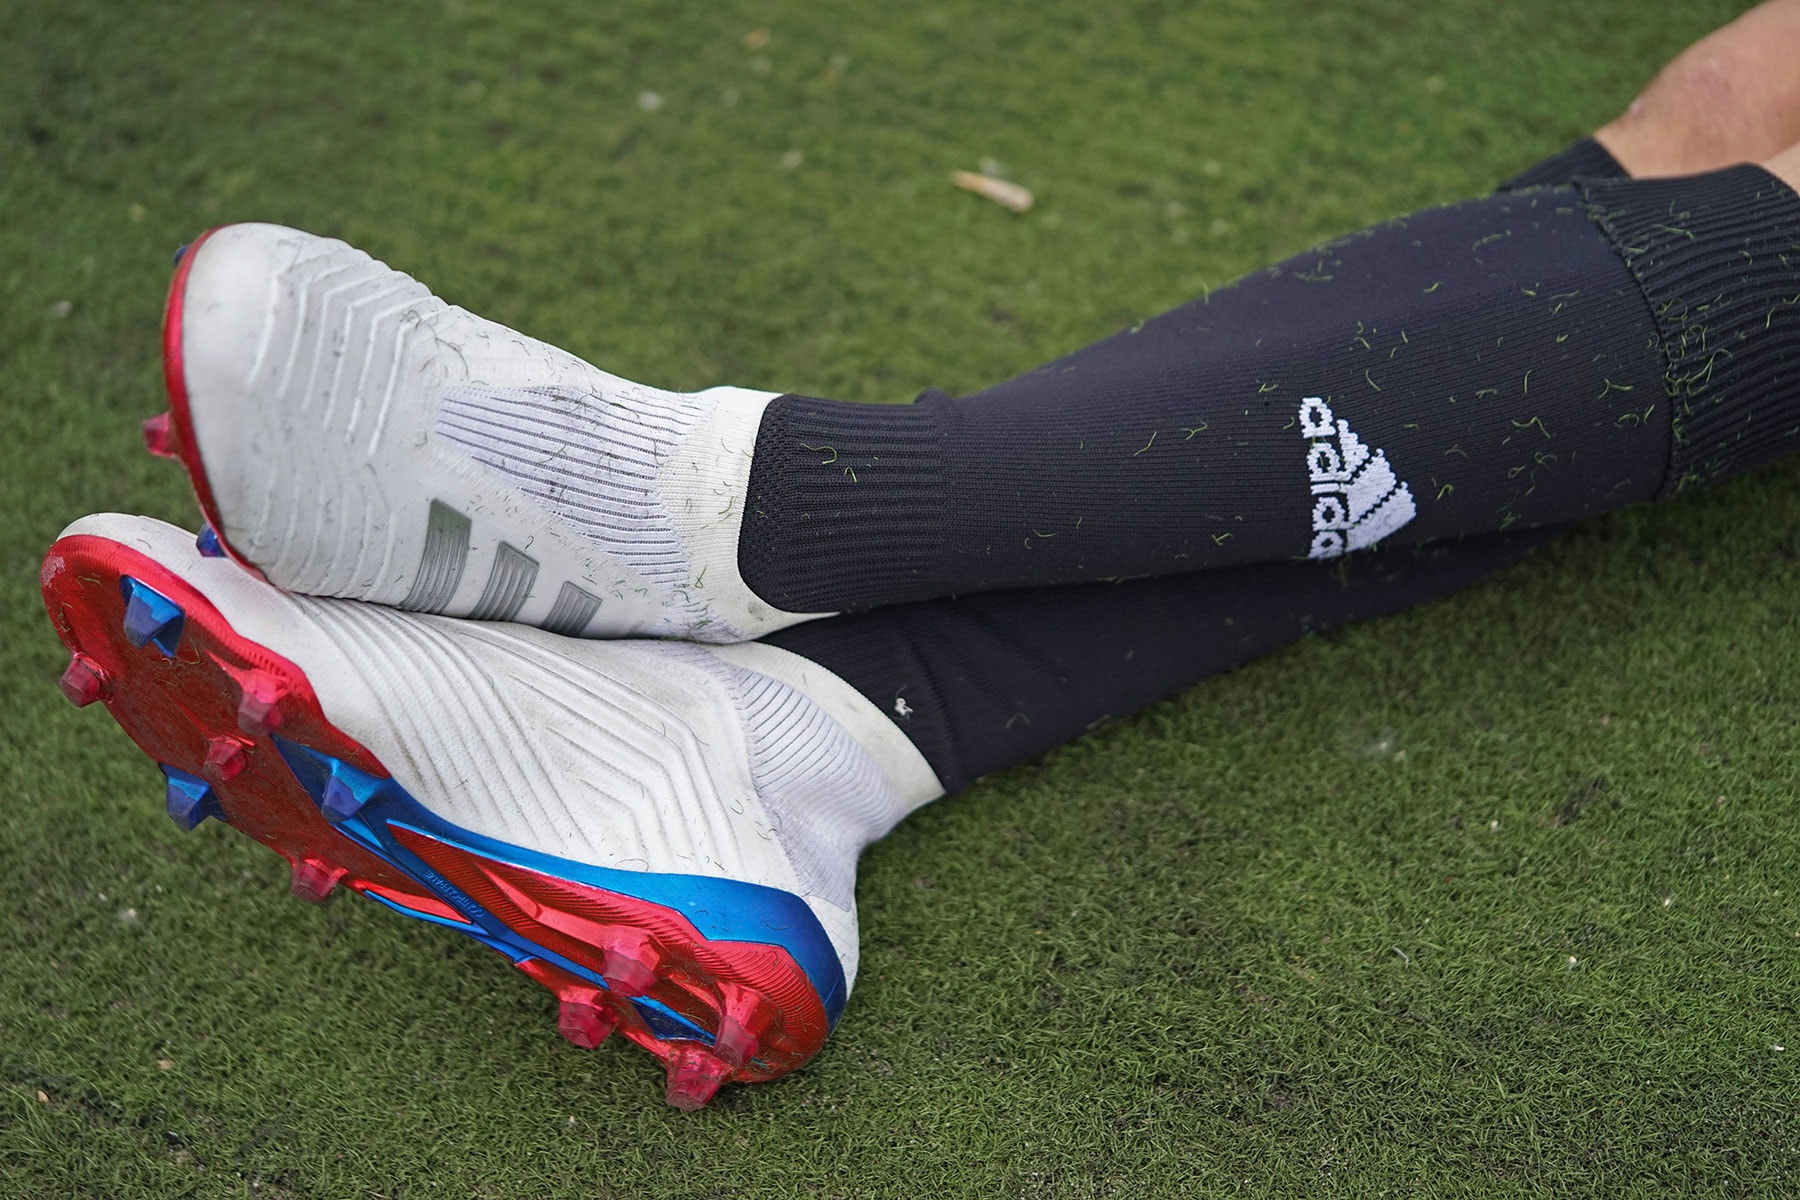 고샤 루브친스키 x 아디다스, 2018 러시아 월드컵 협업 컬렉션 출시 adidas gosha rubchinskiy collab russia worldcup km20